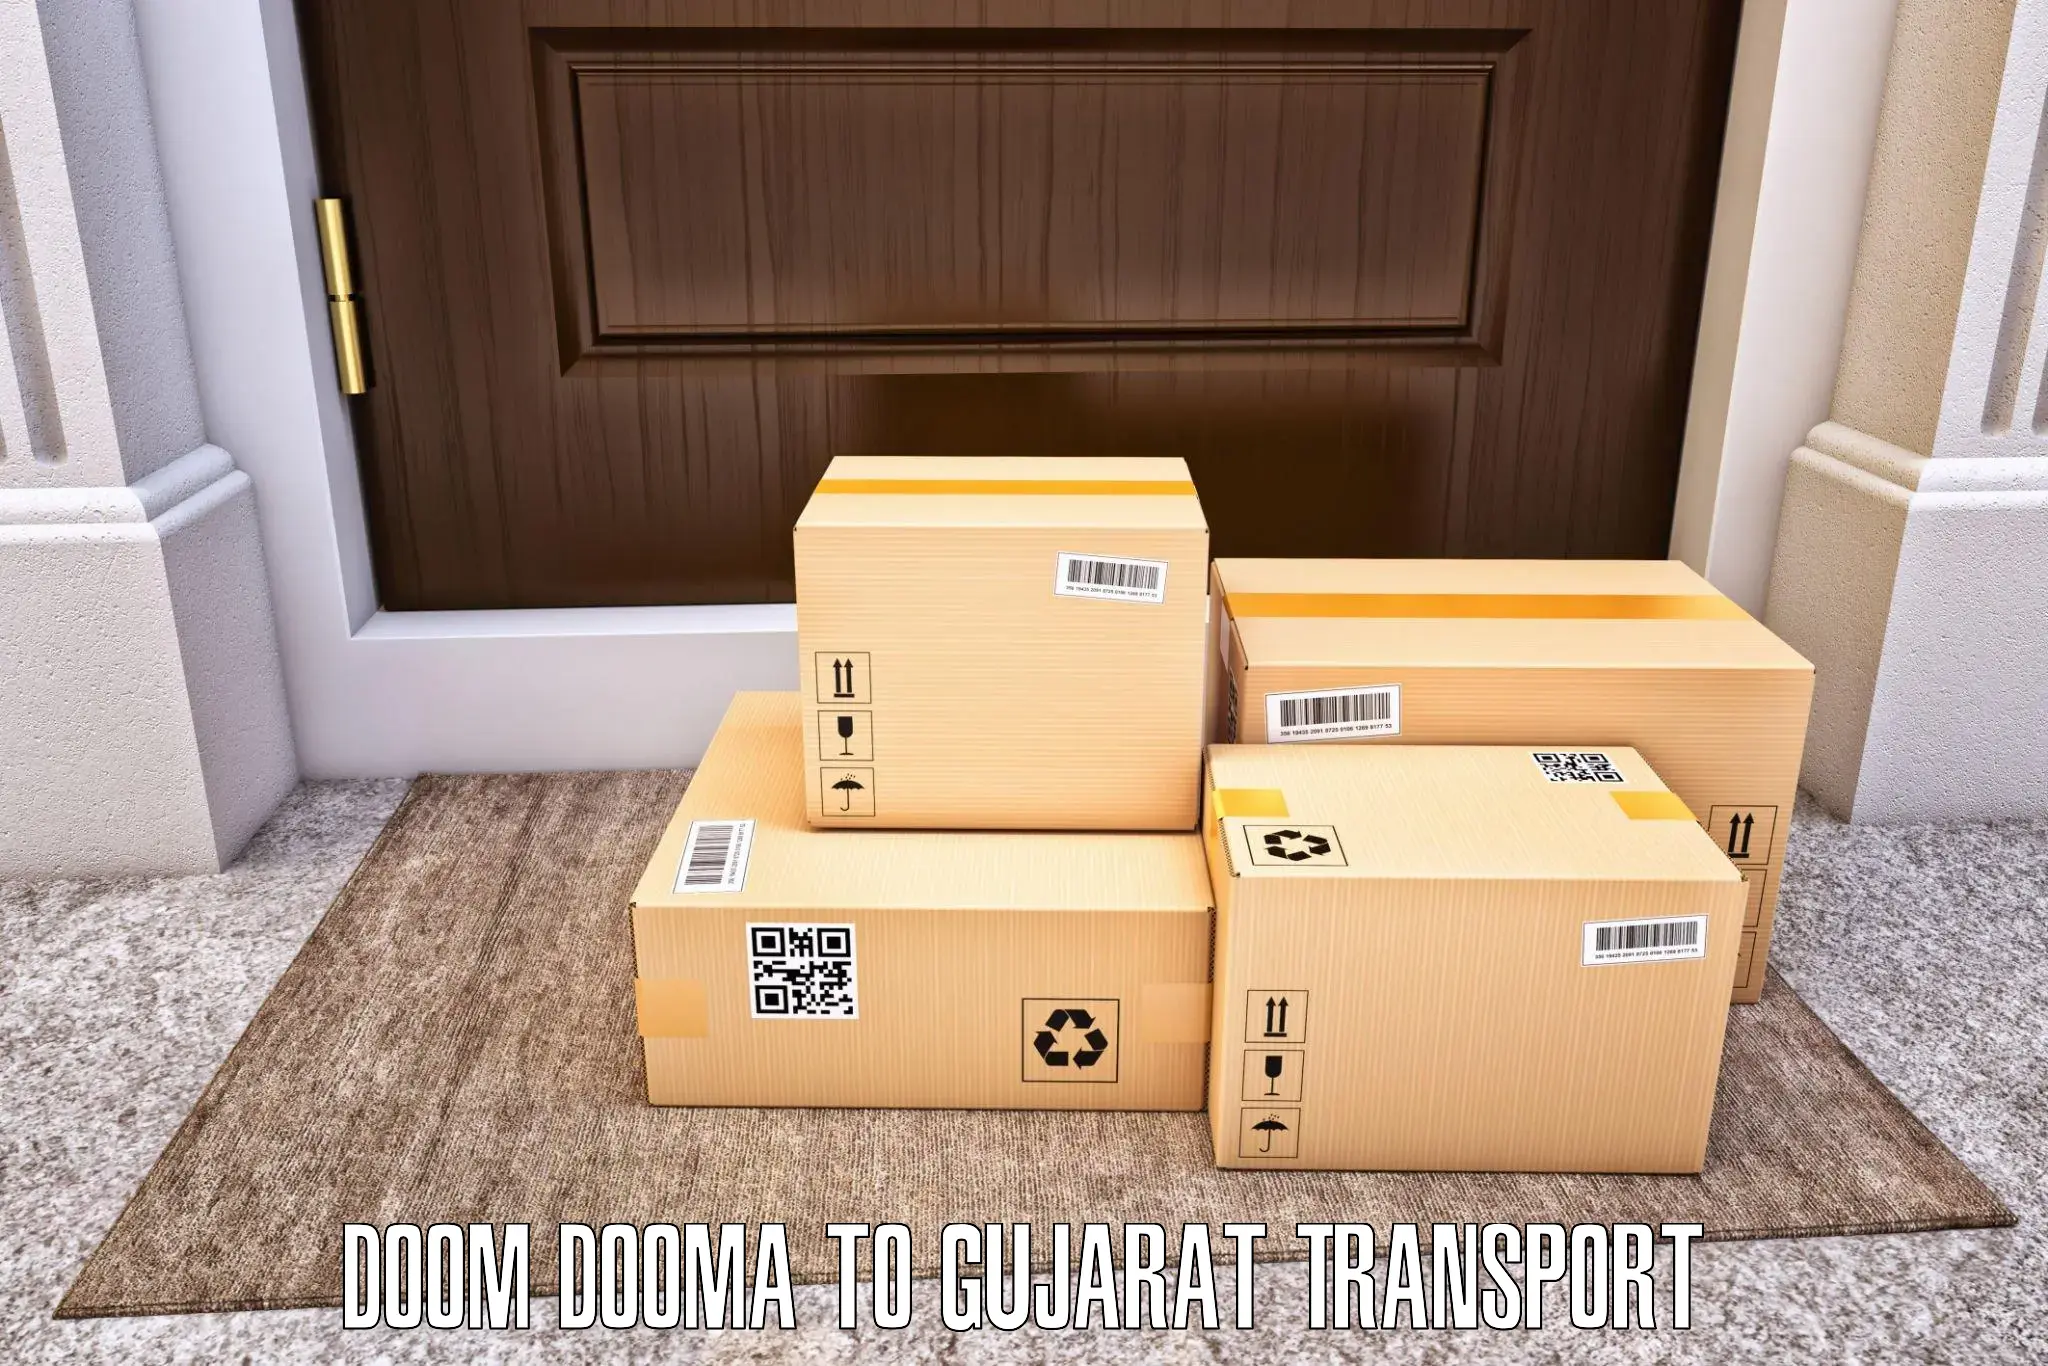 Lorry transport service Doom Dooma to IIIT Vadodara